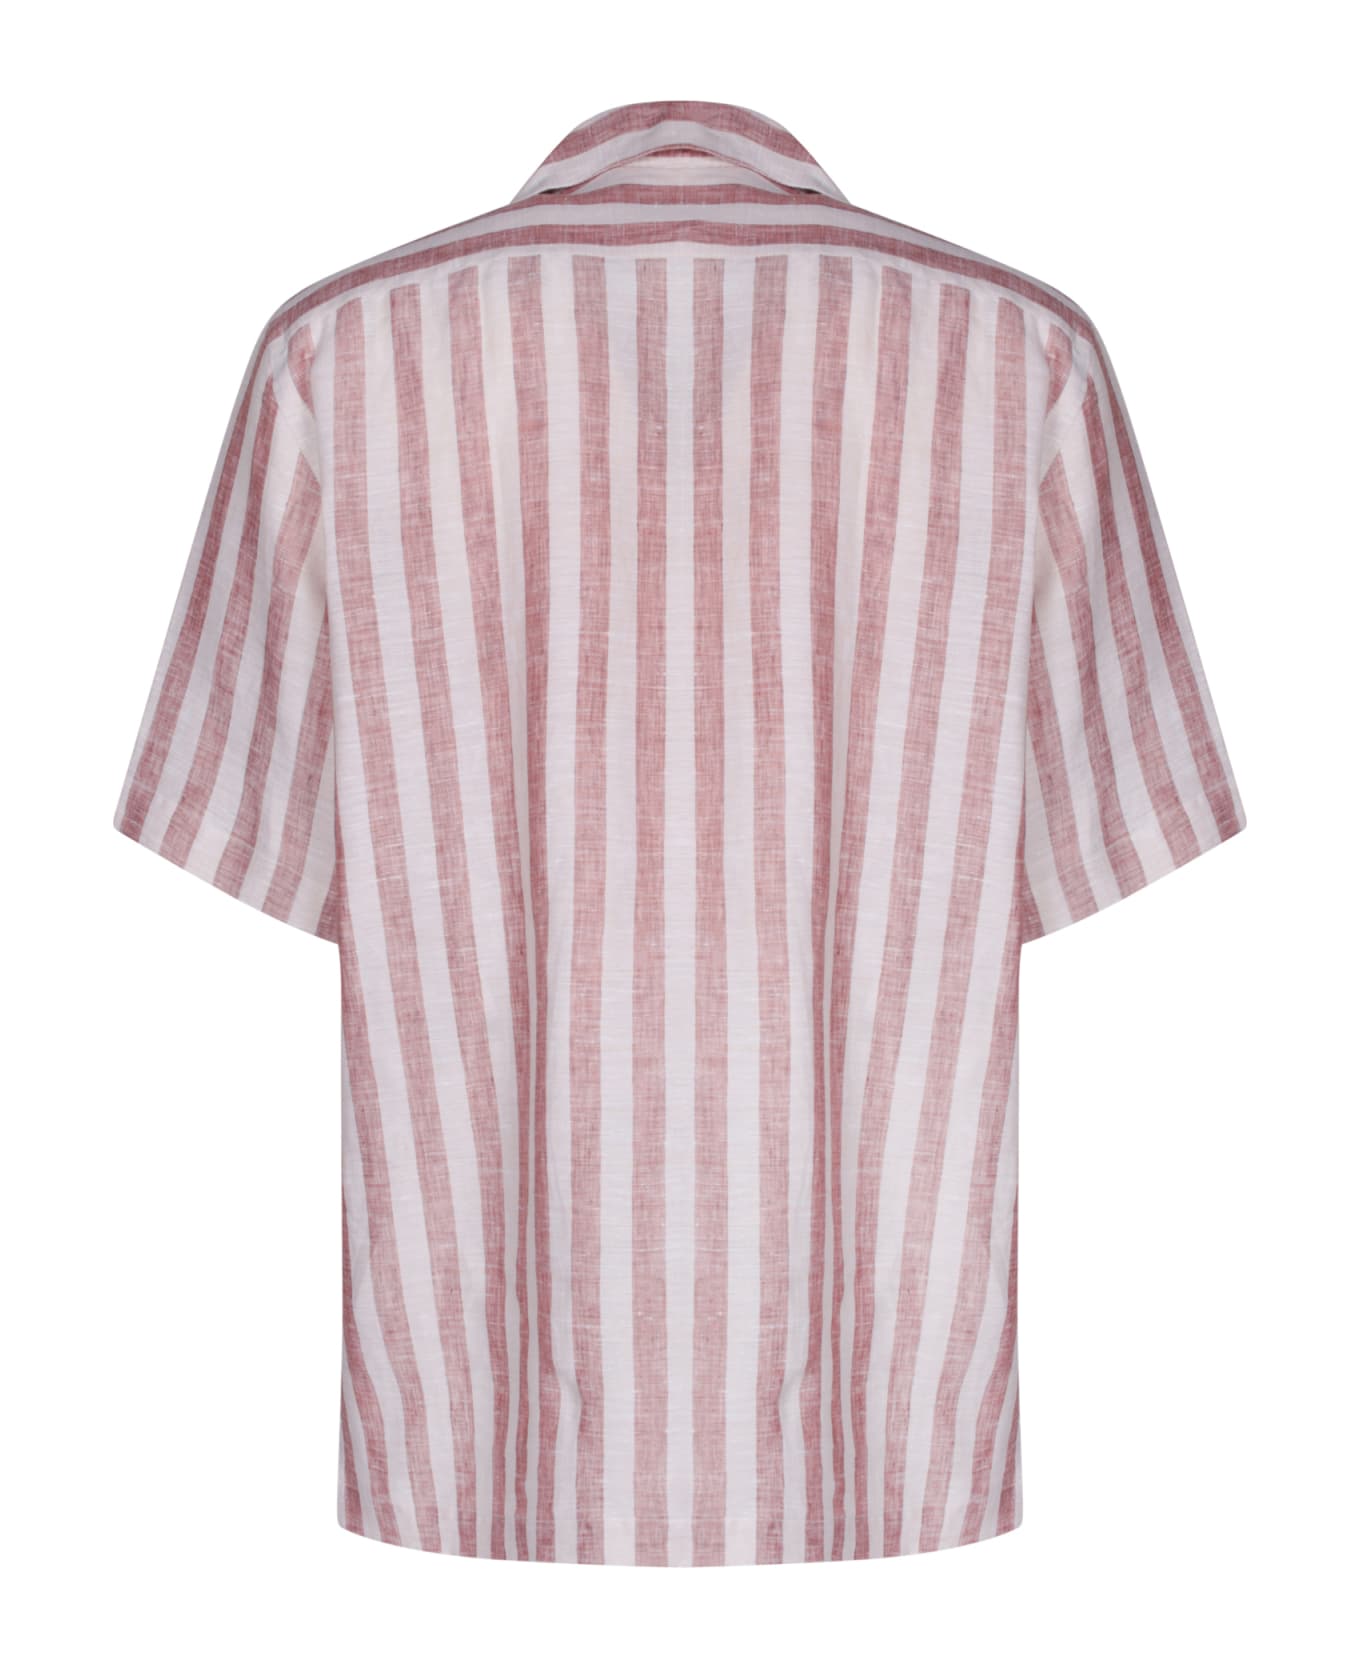 Lardini Klop Striped Red/beige Shirt - Beige